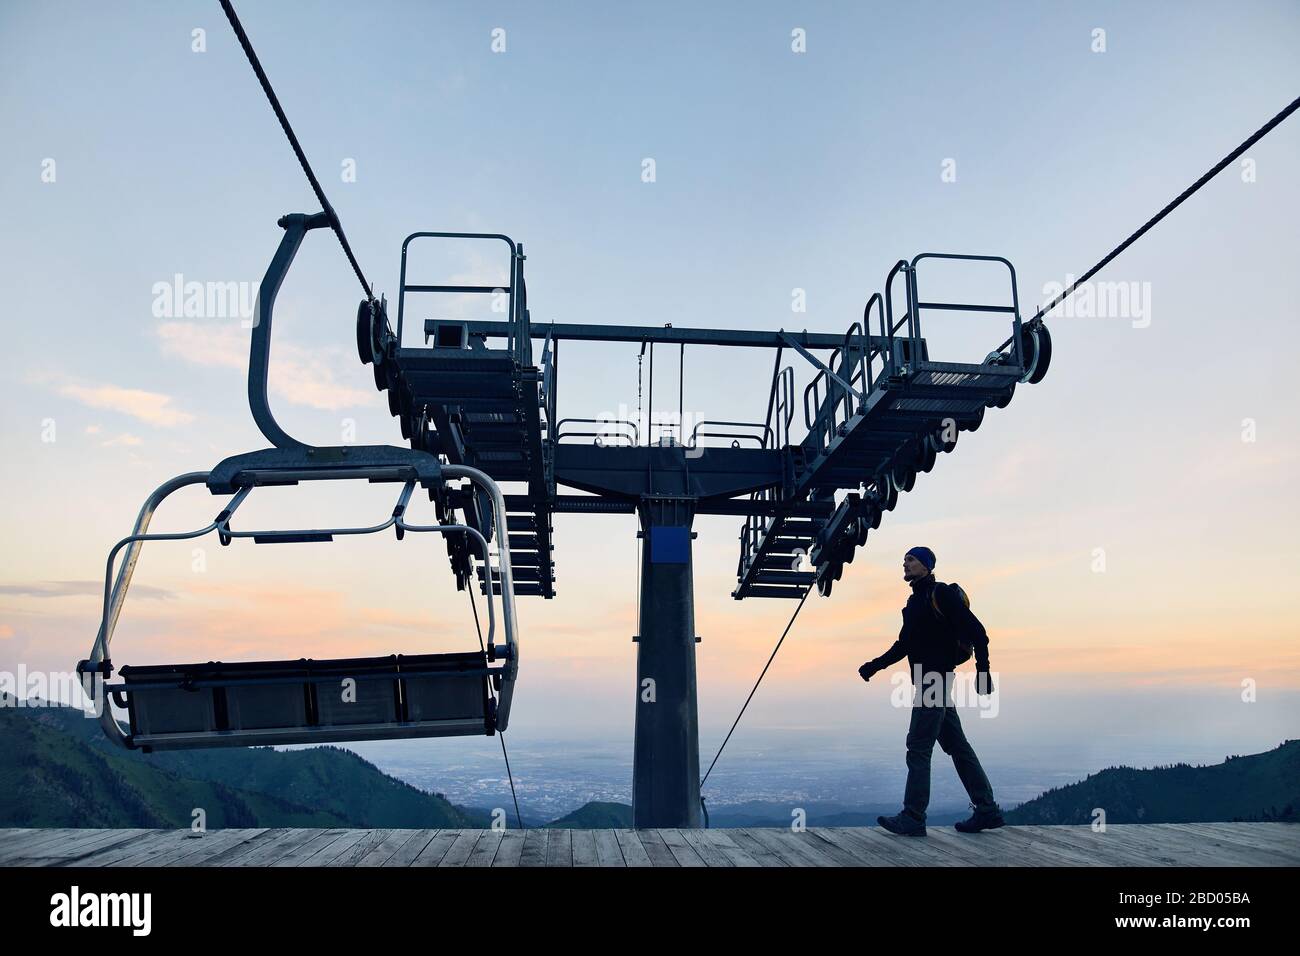 Touristische Mann am Ski Lift Station in Silhouette hoch in Mountain Ski Resort bei Sonnenaufgang Stockfoto